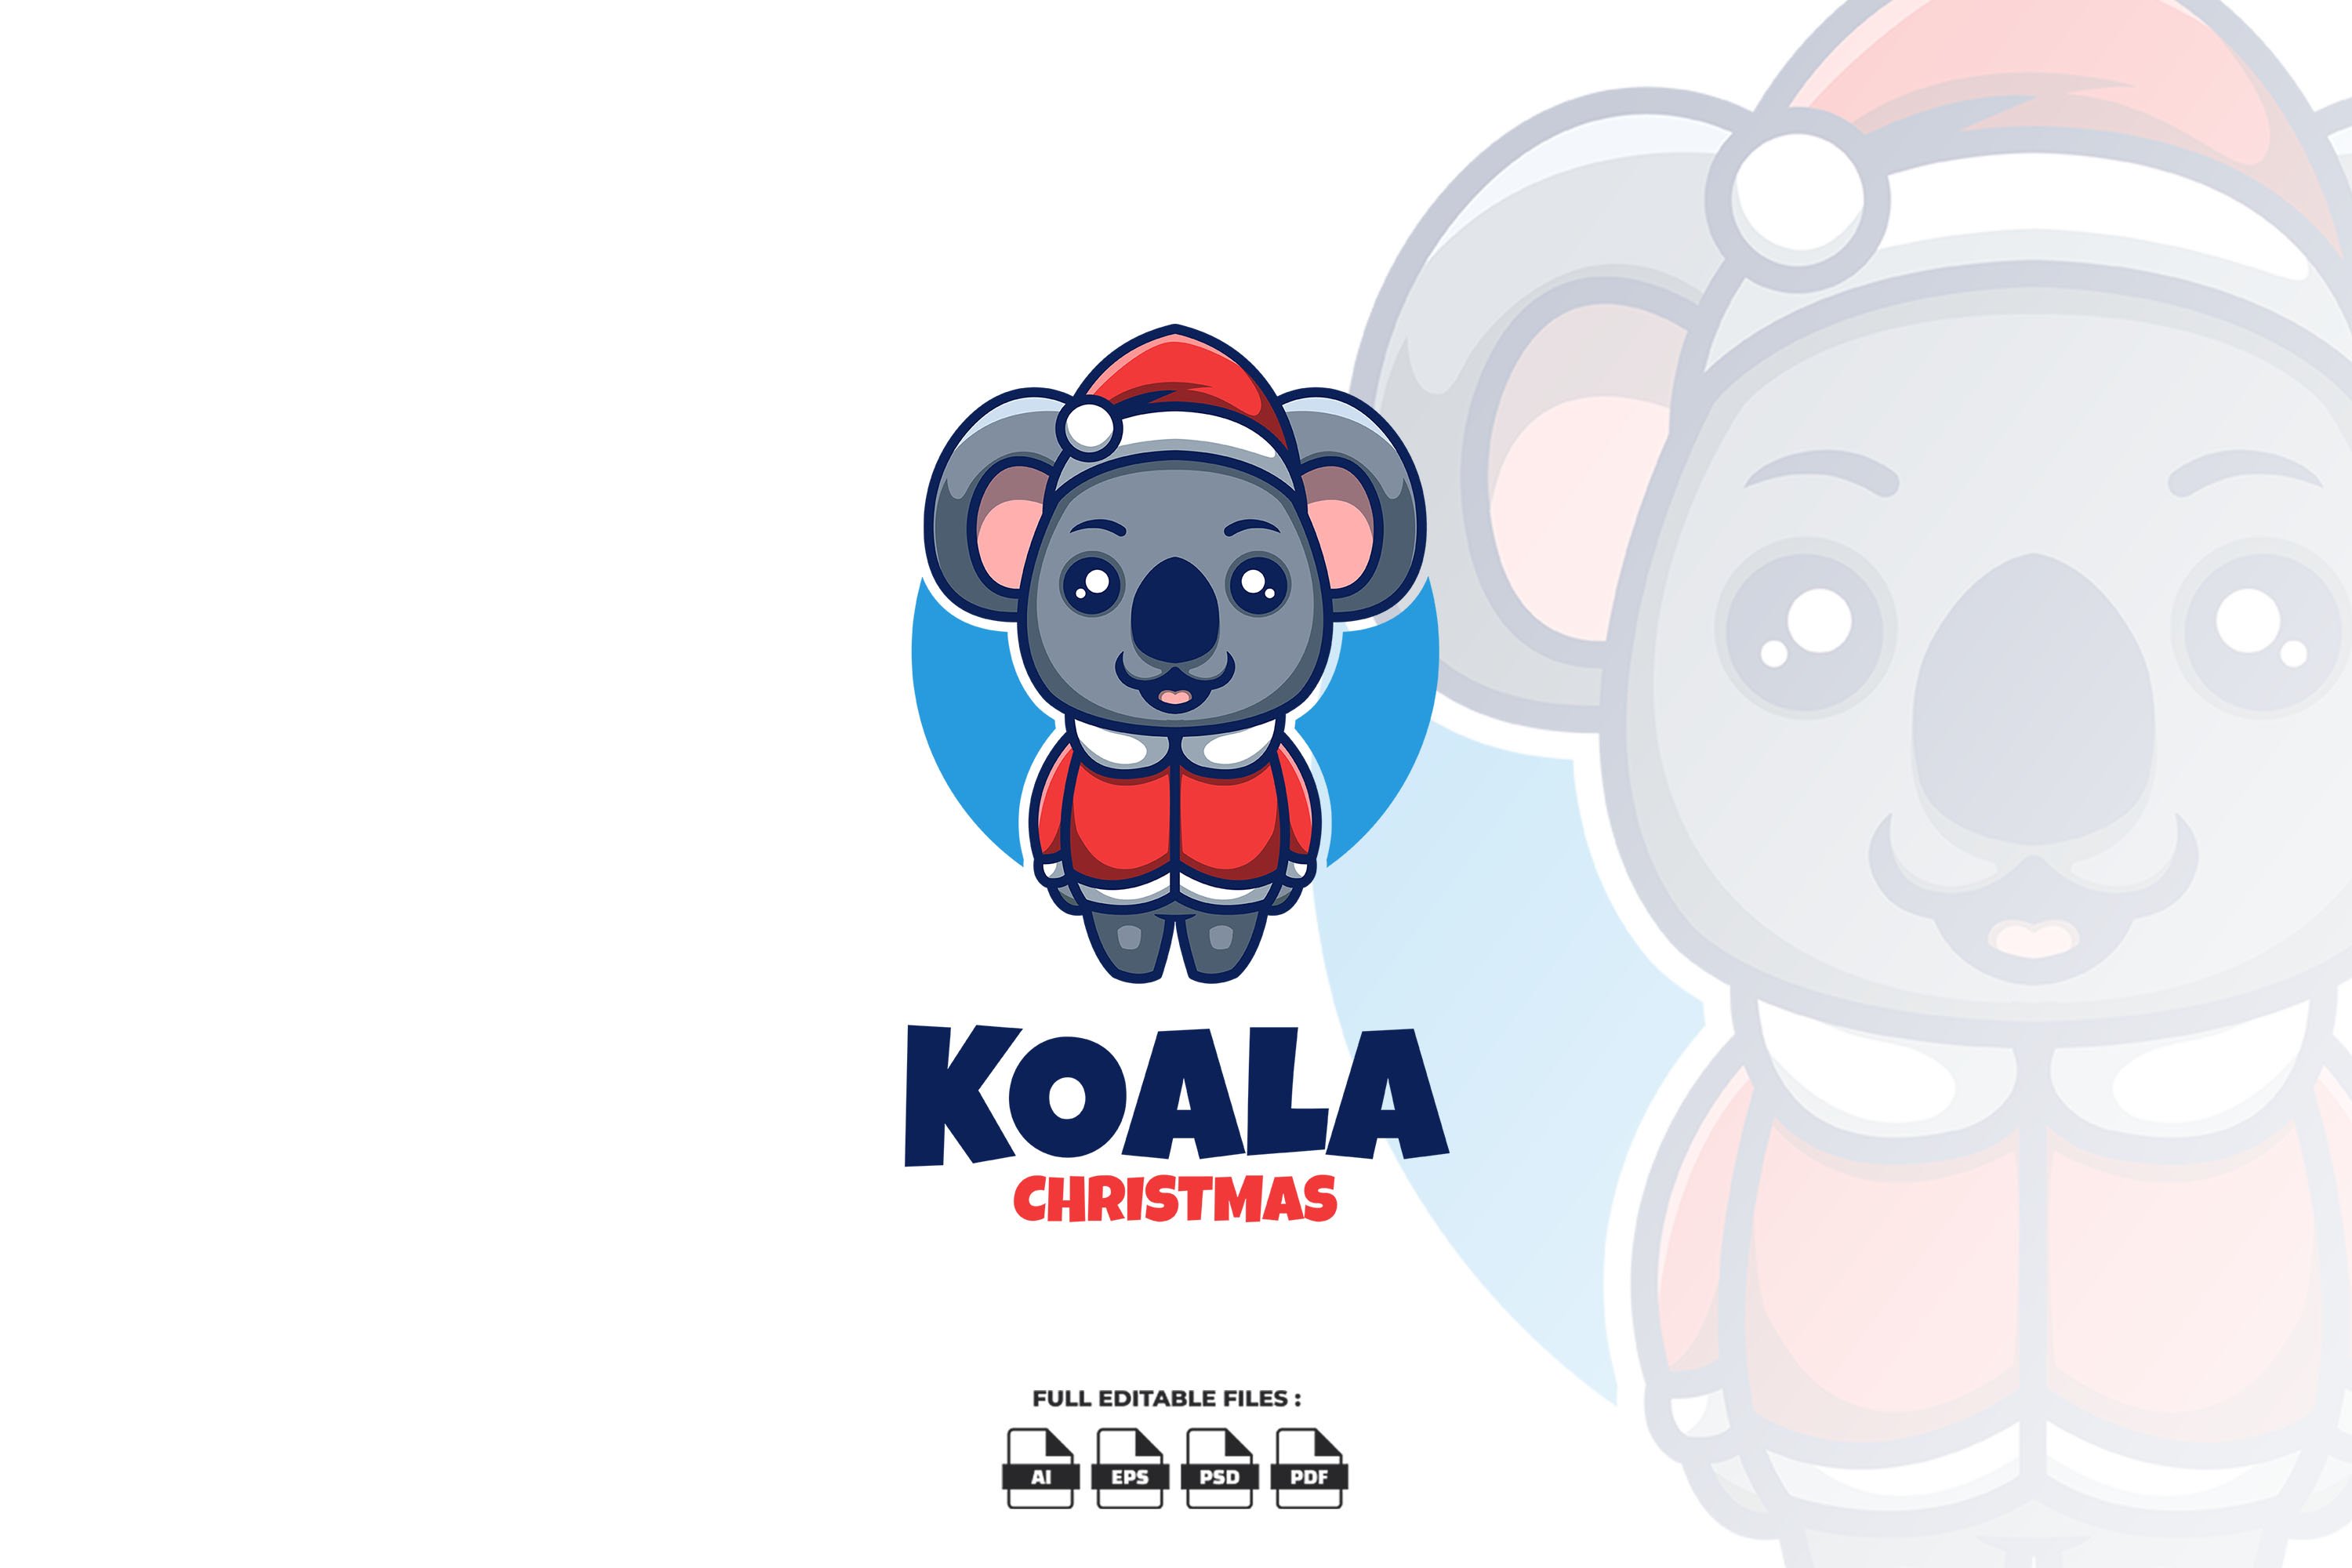 Koala Christmas Mascot Logo cover image.